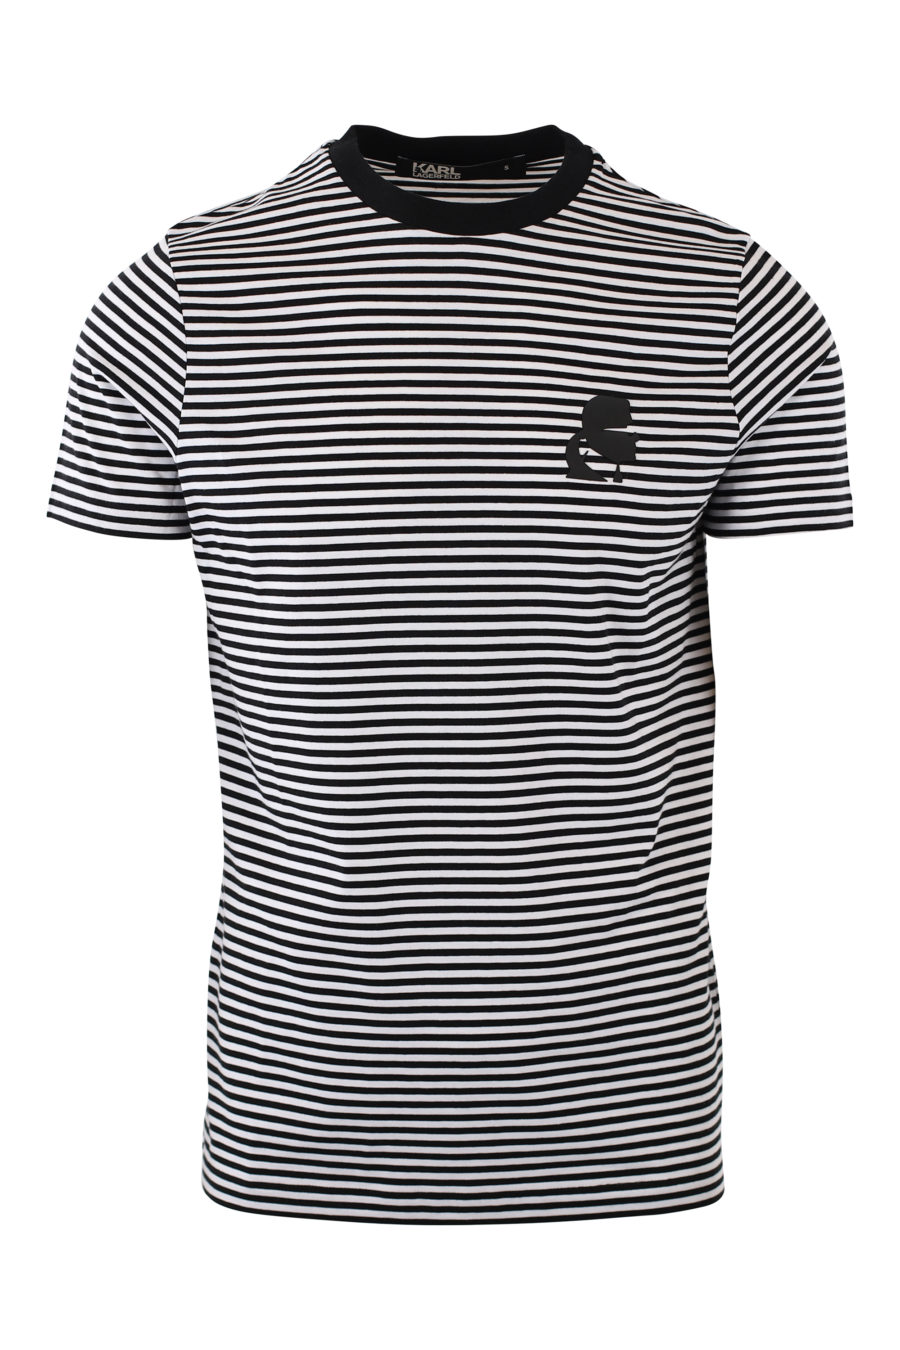 Camiseta de rayas blancas y negras con logo negro en goma - IMG 2094